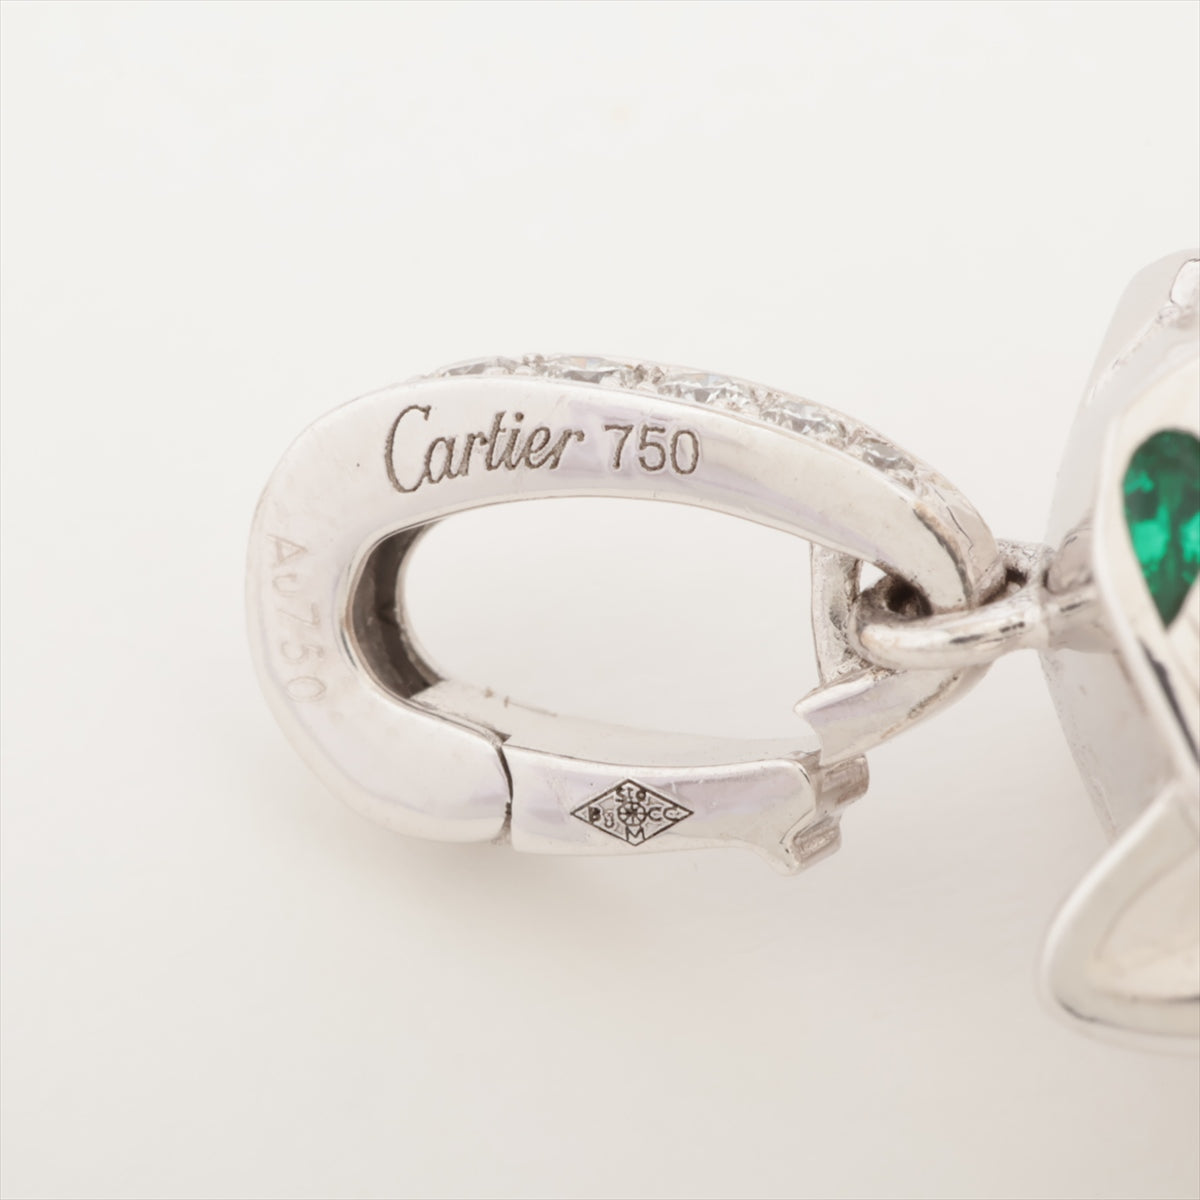 Cartier Panthéon du Cartier Diamond Emerald Onyx Code Necklace 750 (WG) Total 30.4g D0.45